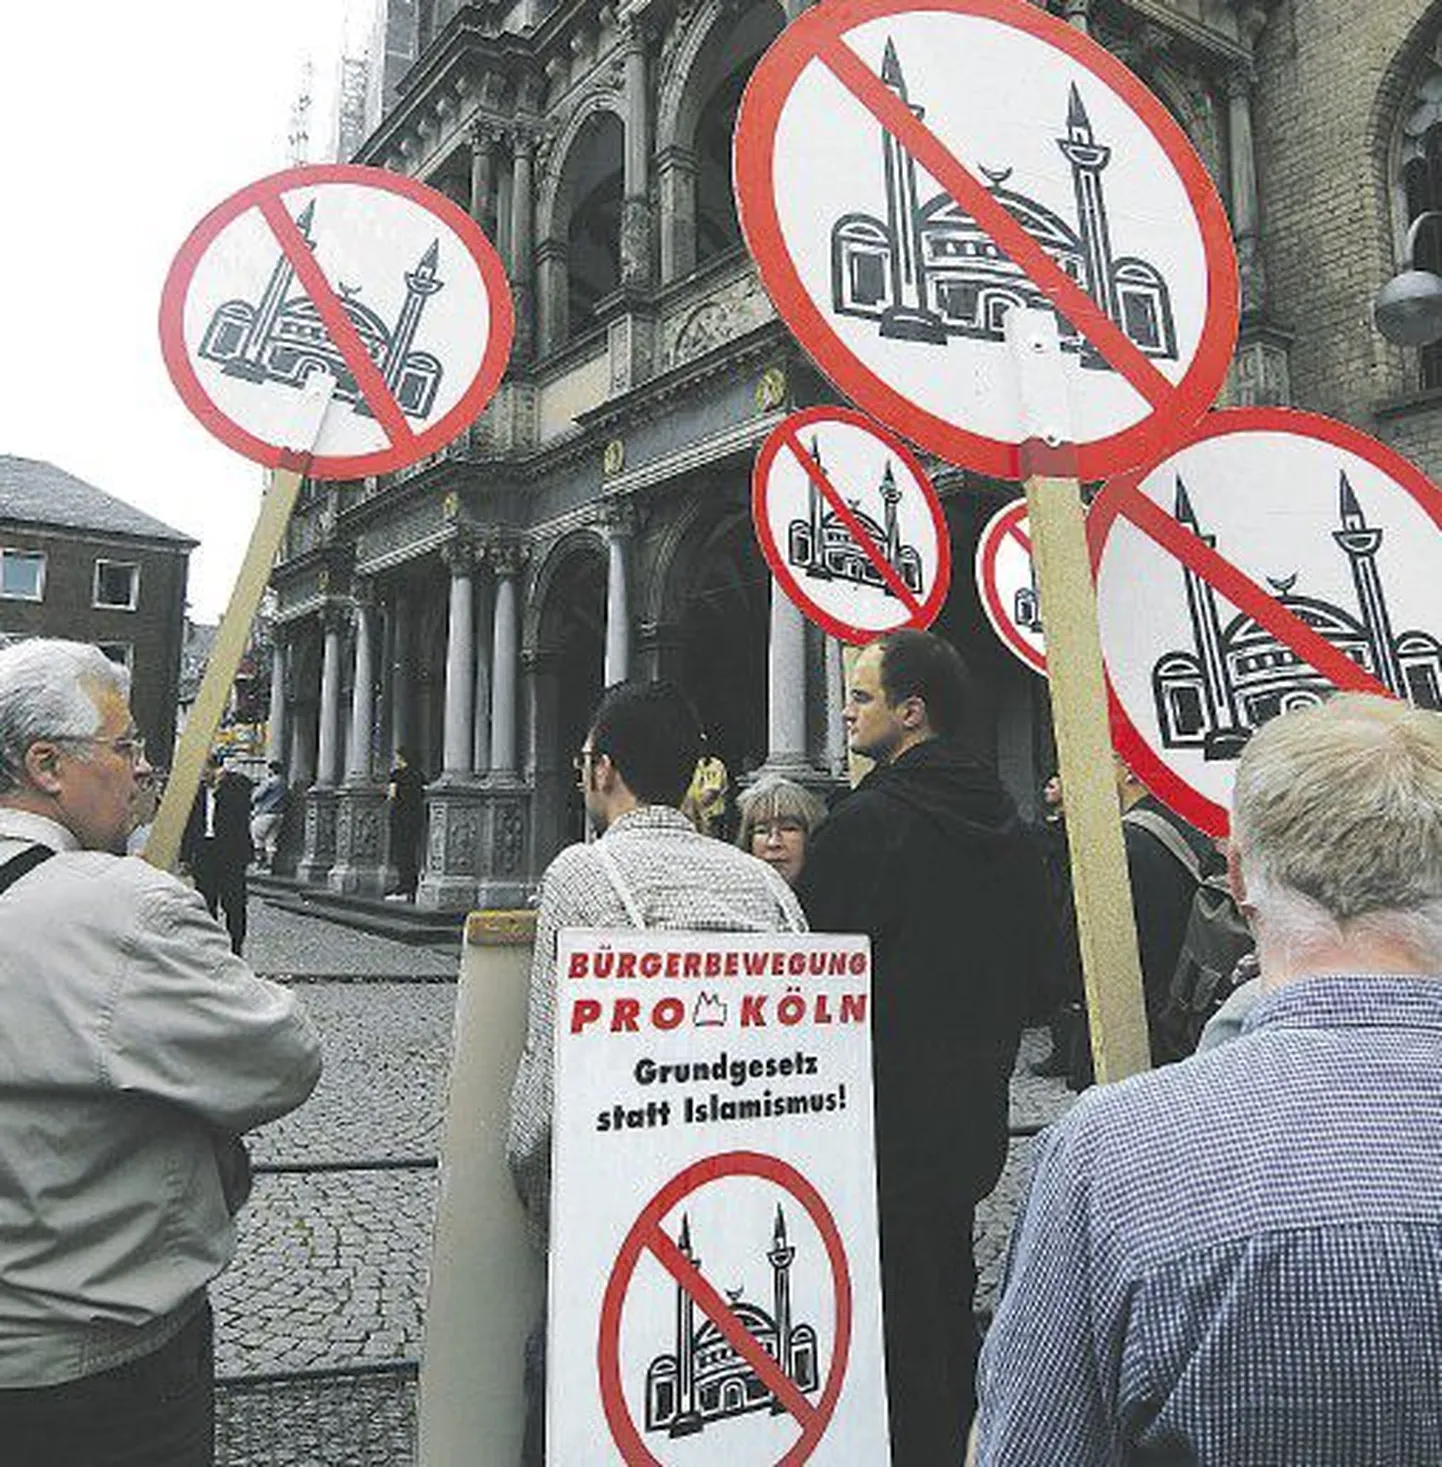 Демонстрация местных жителей против строительства мечети в Кельне. Плакат требует, чтобы в Германии действовала Конституция, а не законы ислама.